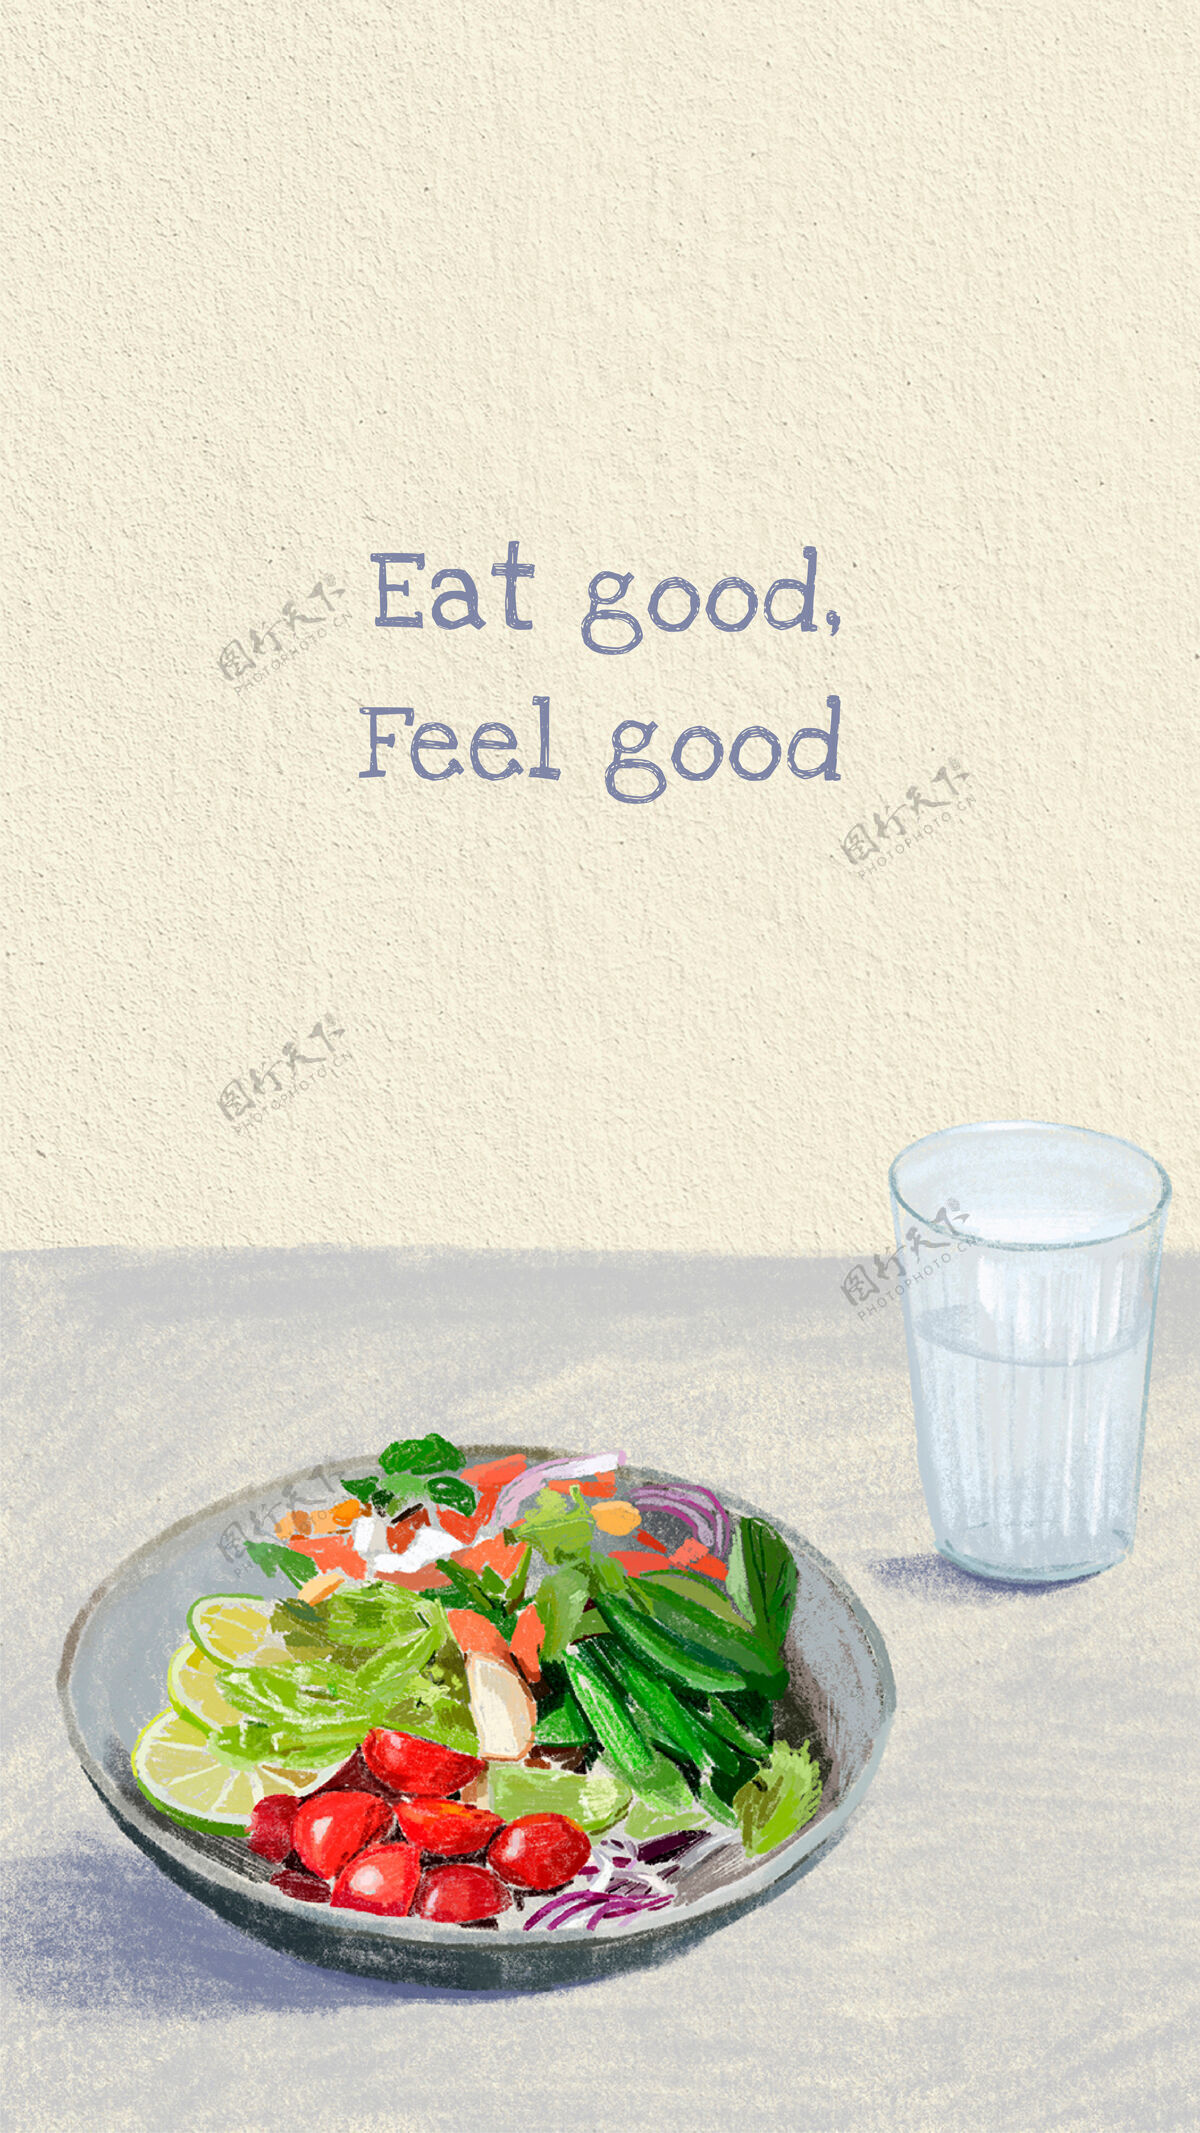 菜单健活方式手机壁纸配报价 吃的好感觉好动机颜色图形